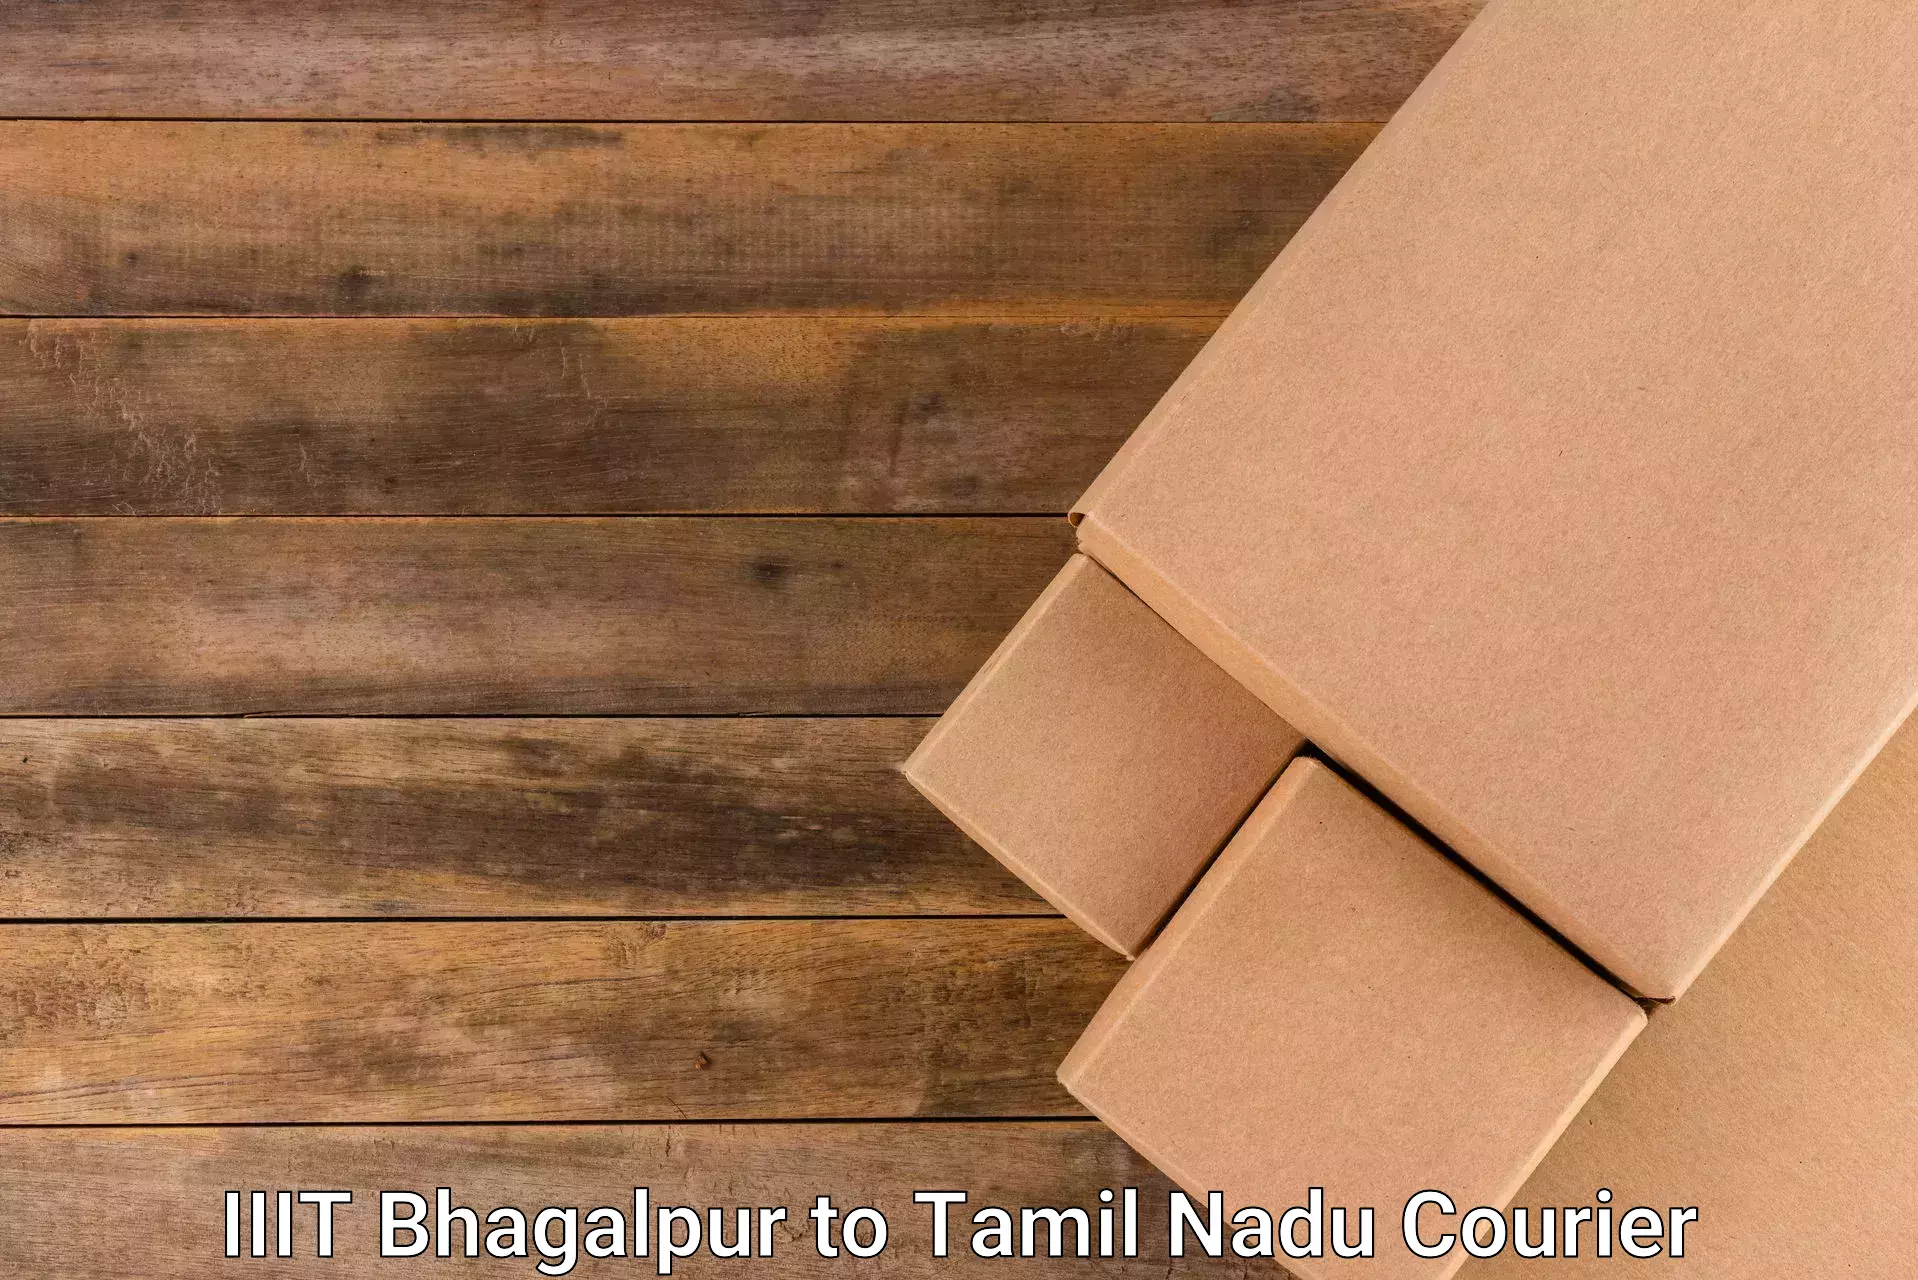 Custom courier packaging in IIIT Bhagalpur to Tamil Nadu